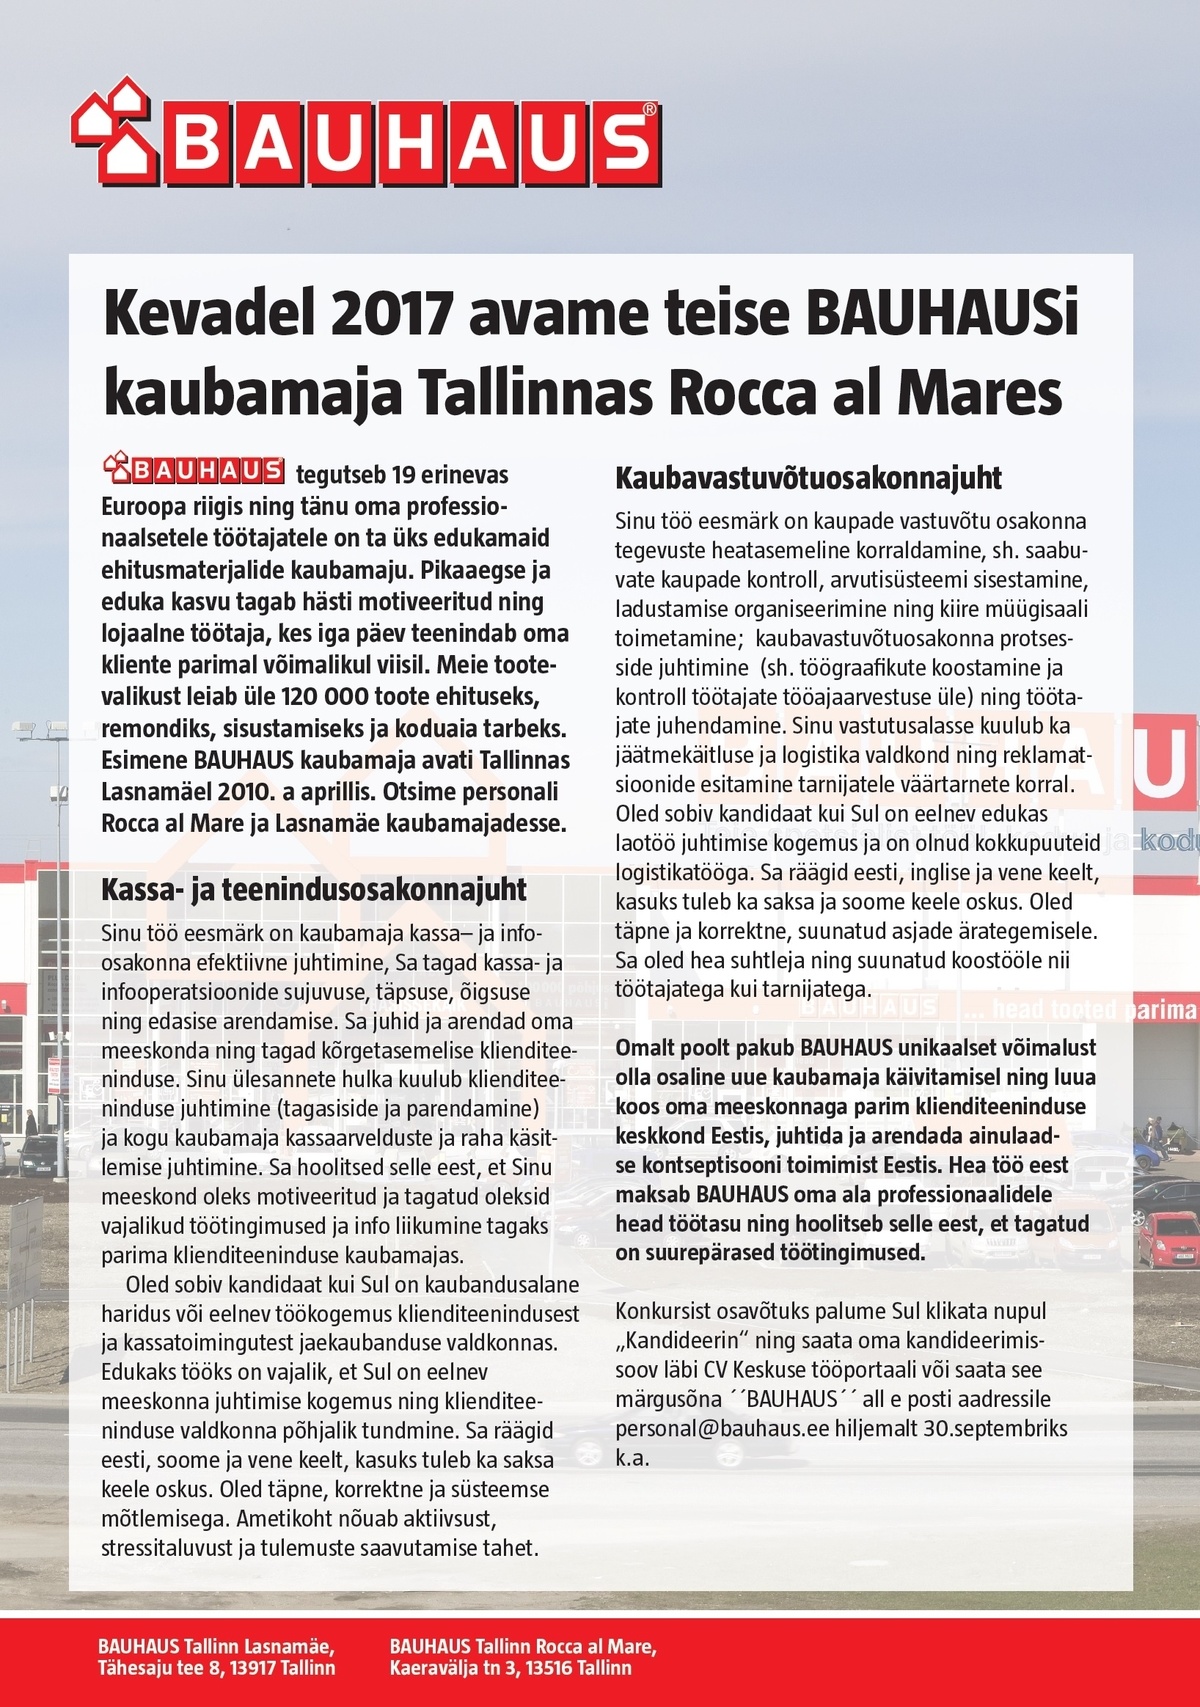 BAUHAUS EESTI UÜ 2017 kevadel avatava uue BAUHAUSI kaubamaja. Tööd saavad: Kaubavastuvõtuosakonna ning Kassa- ja teenindusosakonna JUHID!